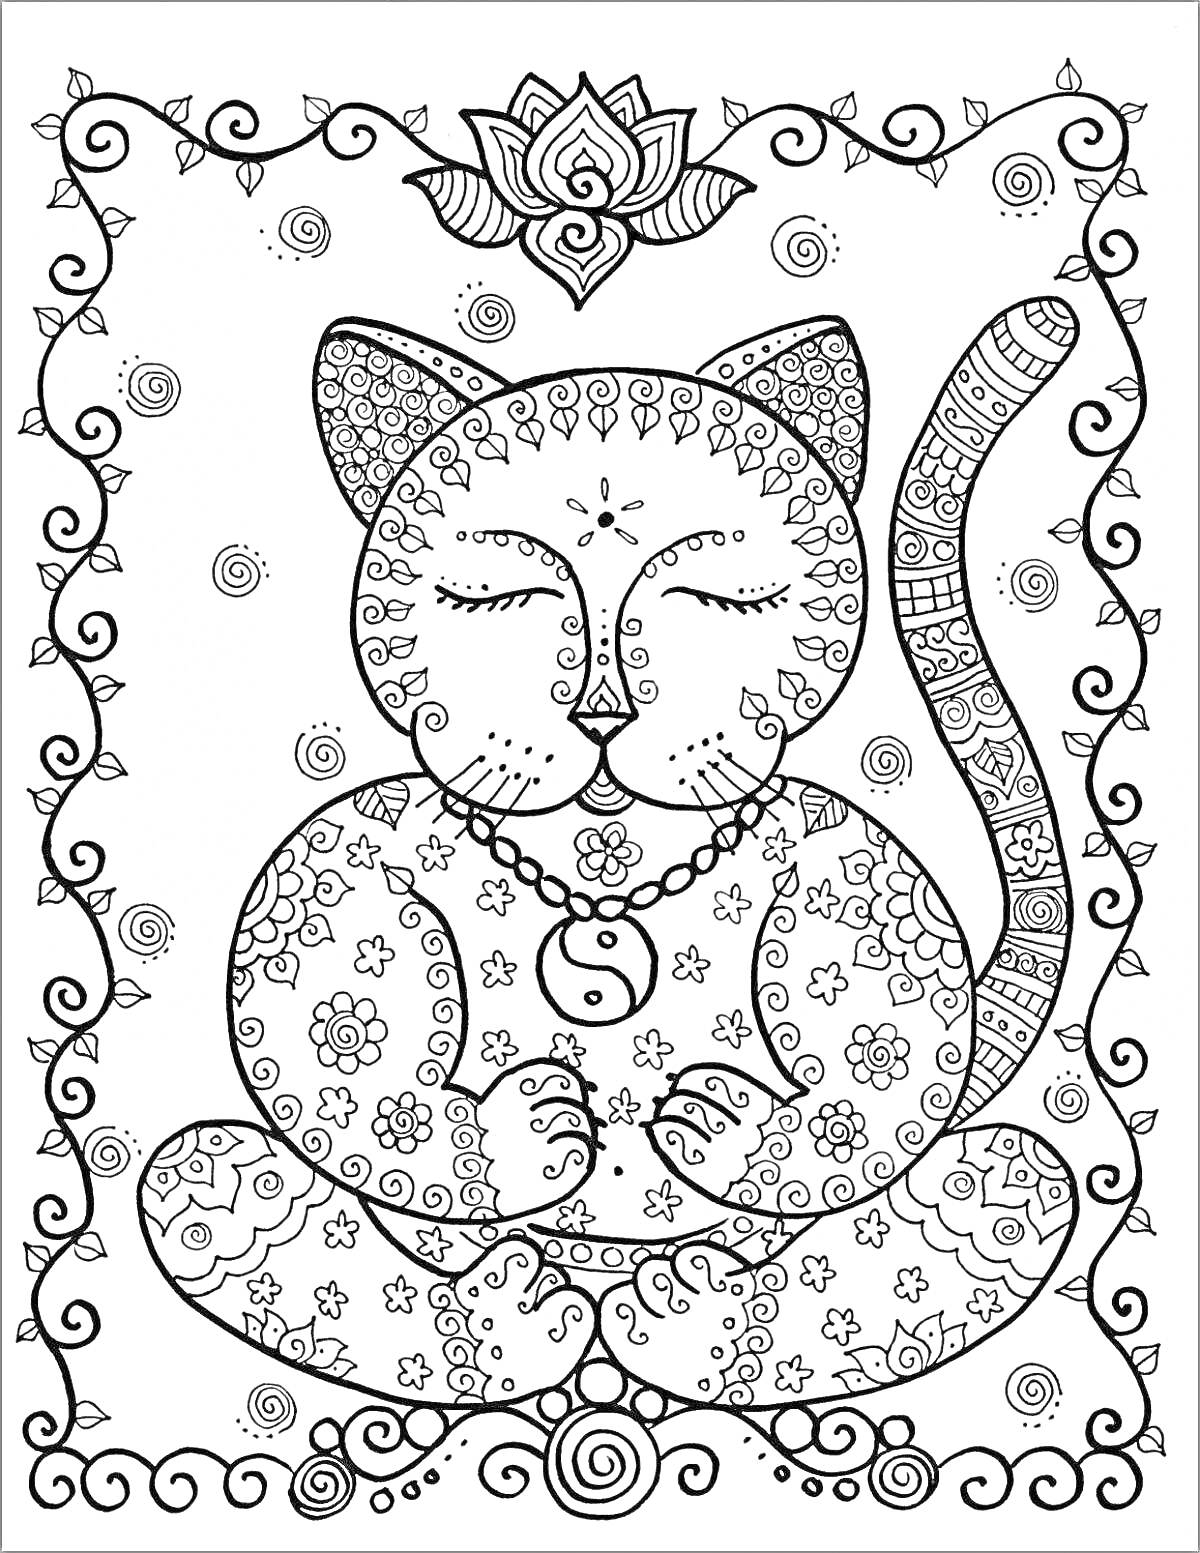 Раскраска котик с узорами, цветы, абстрактные узоры, рамка из завитков, лотос наверху